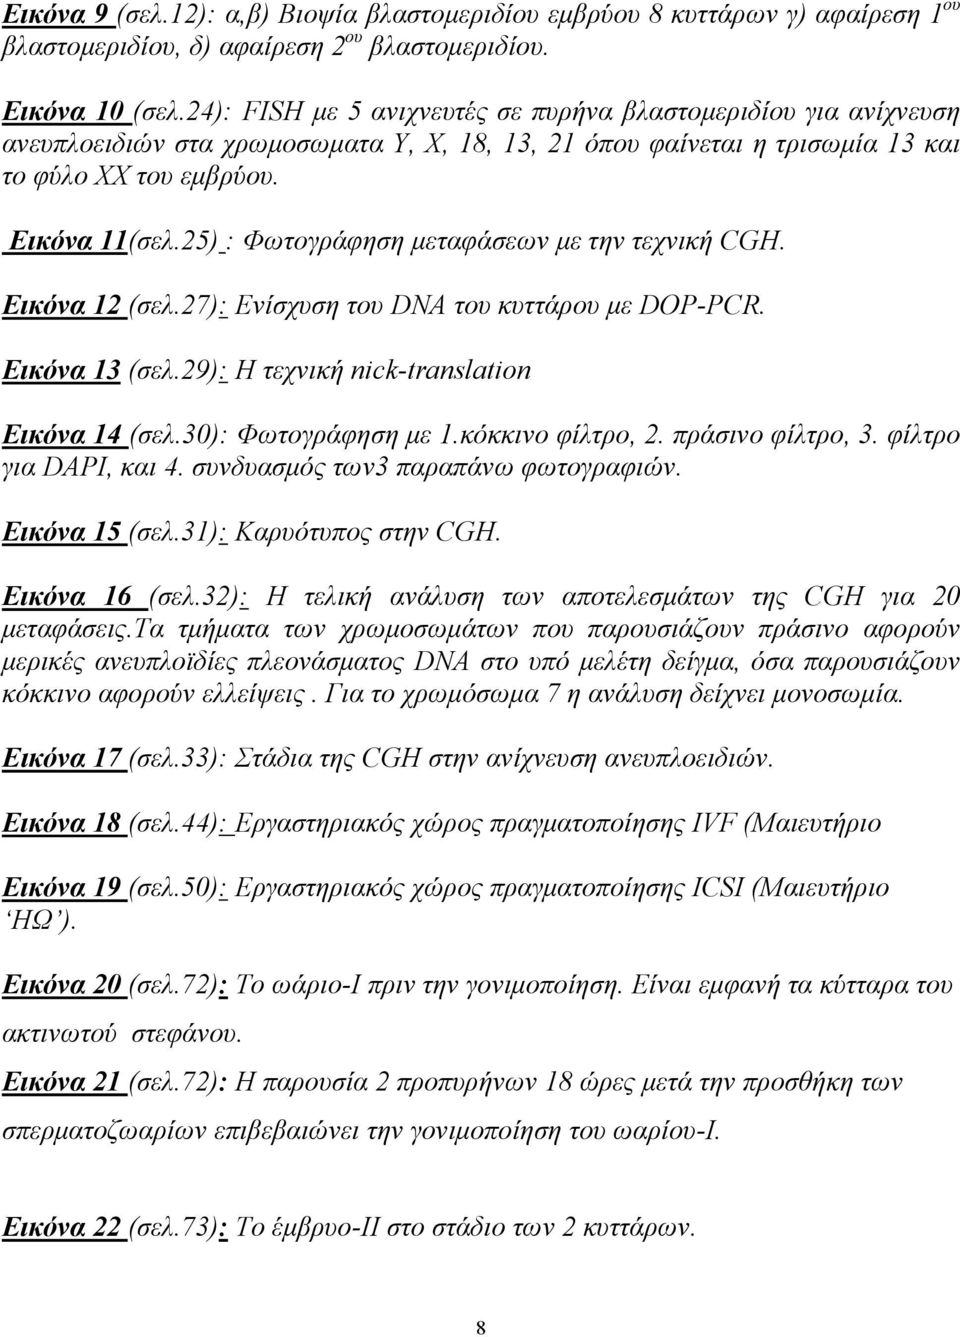 25) : Φωτογράφηση μεταφάσεων με την τεχνική CGH. Εικόνα 12 (σελ.27): Ενίσχυση του DNA του κυττάρου με DOP-PCR. Εικόνα 13 (σελ.29): H τεχνική nick-translation Εικόνα 14 (σελ.30): Φωτογράφηση με 1.